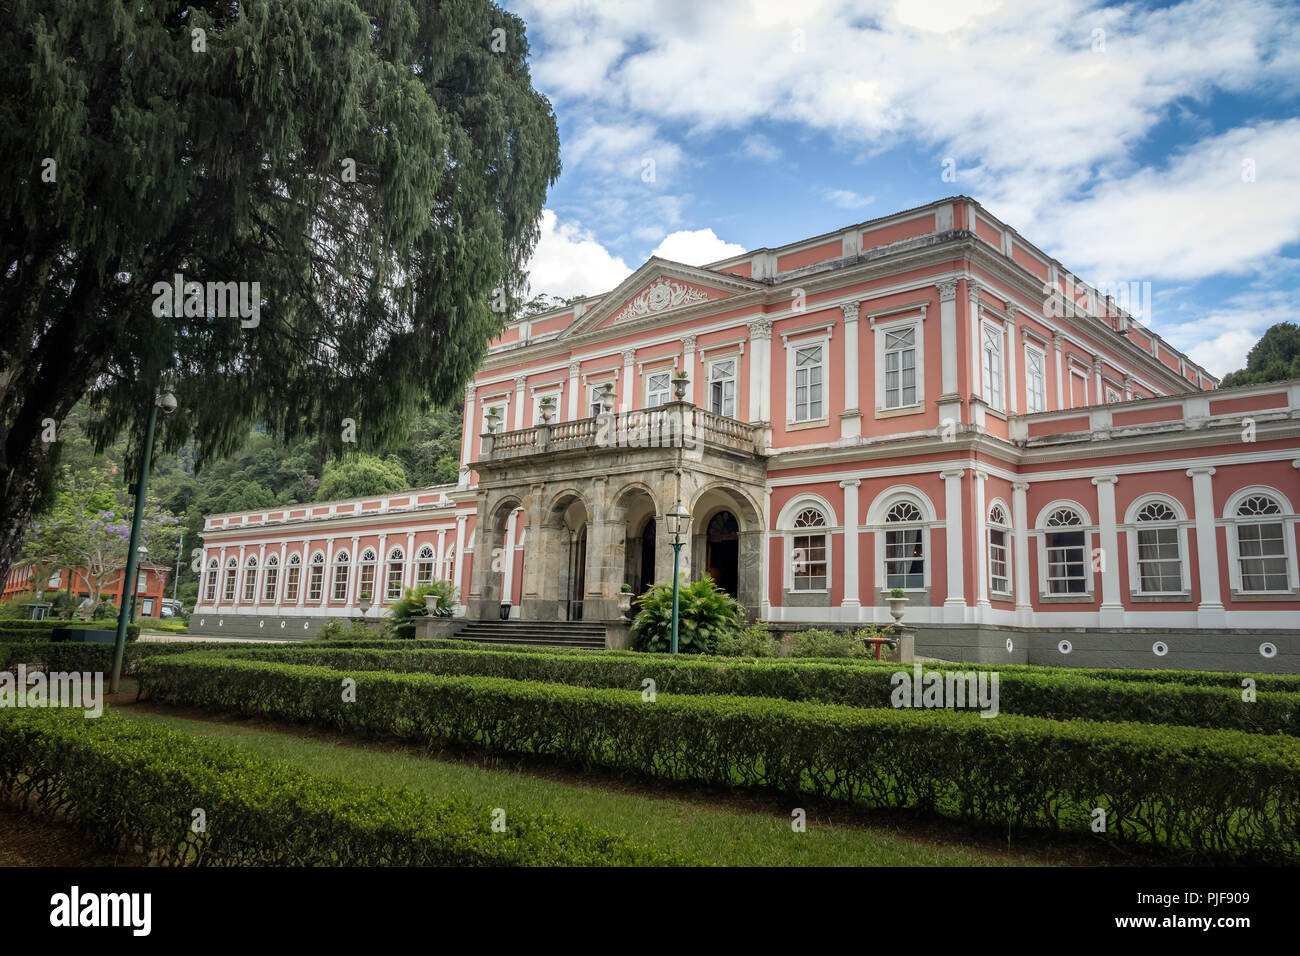 Musée impérial ancien palais d'hiver de la monarchie brésilienne - Petropolis, Rio de Janeiro, Brasil Banque D'Images